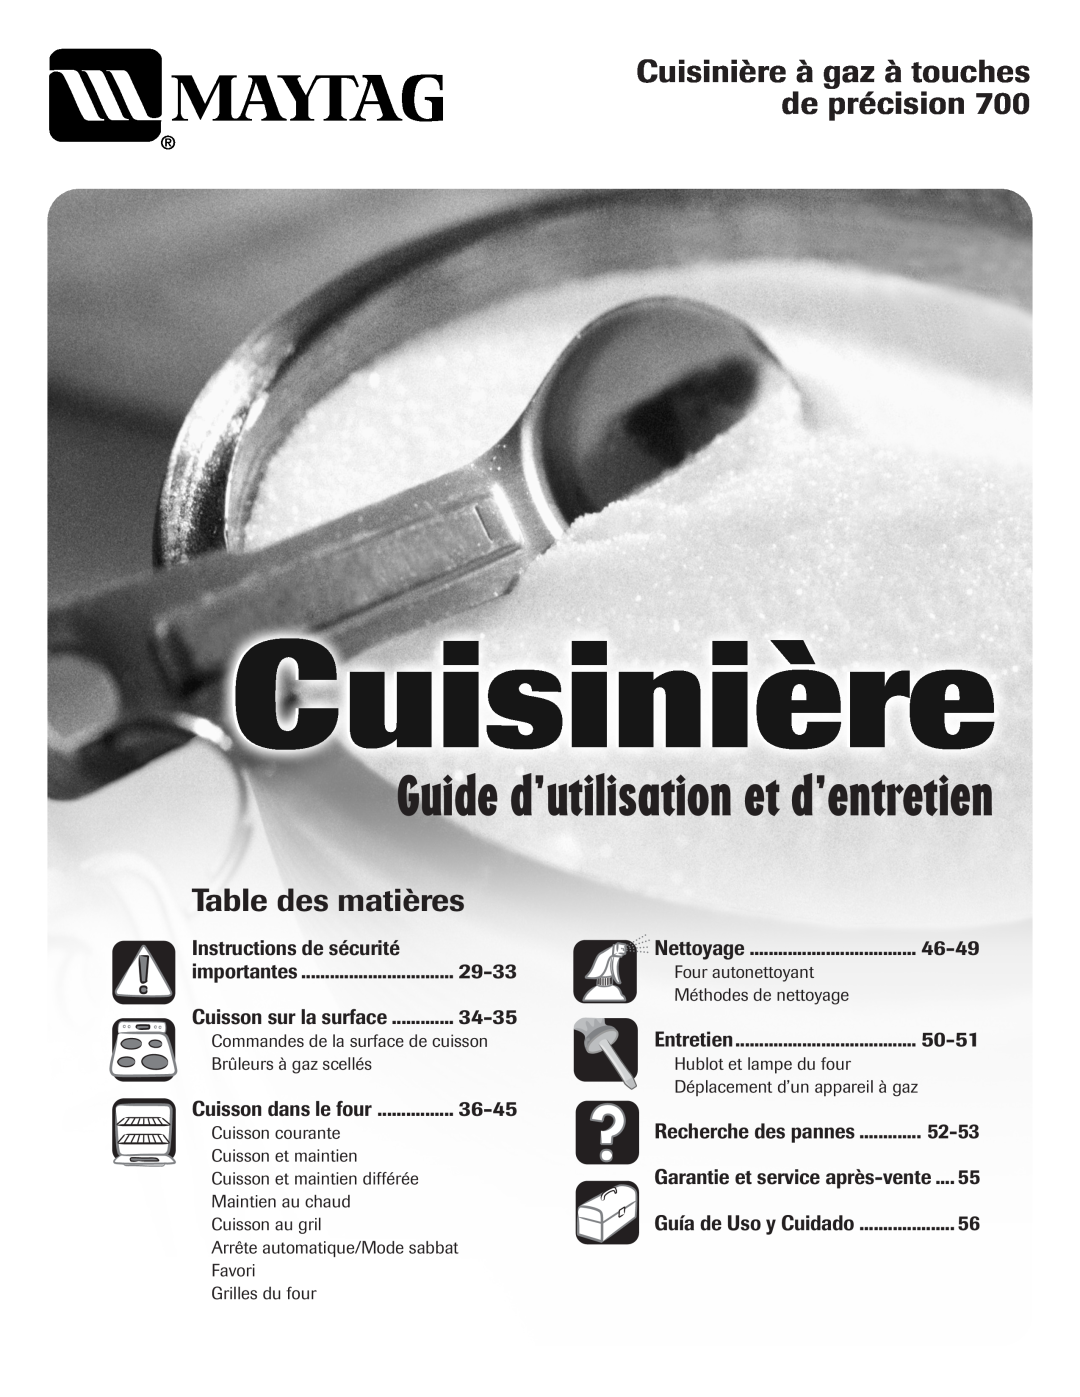 Maytag MGR5775QDW Guide d’utilisation et d’entretien, Cuisinière à gaz à touches de précision, Table des matières, 46-49 